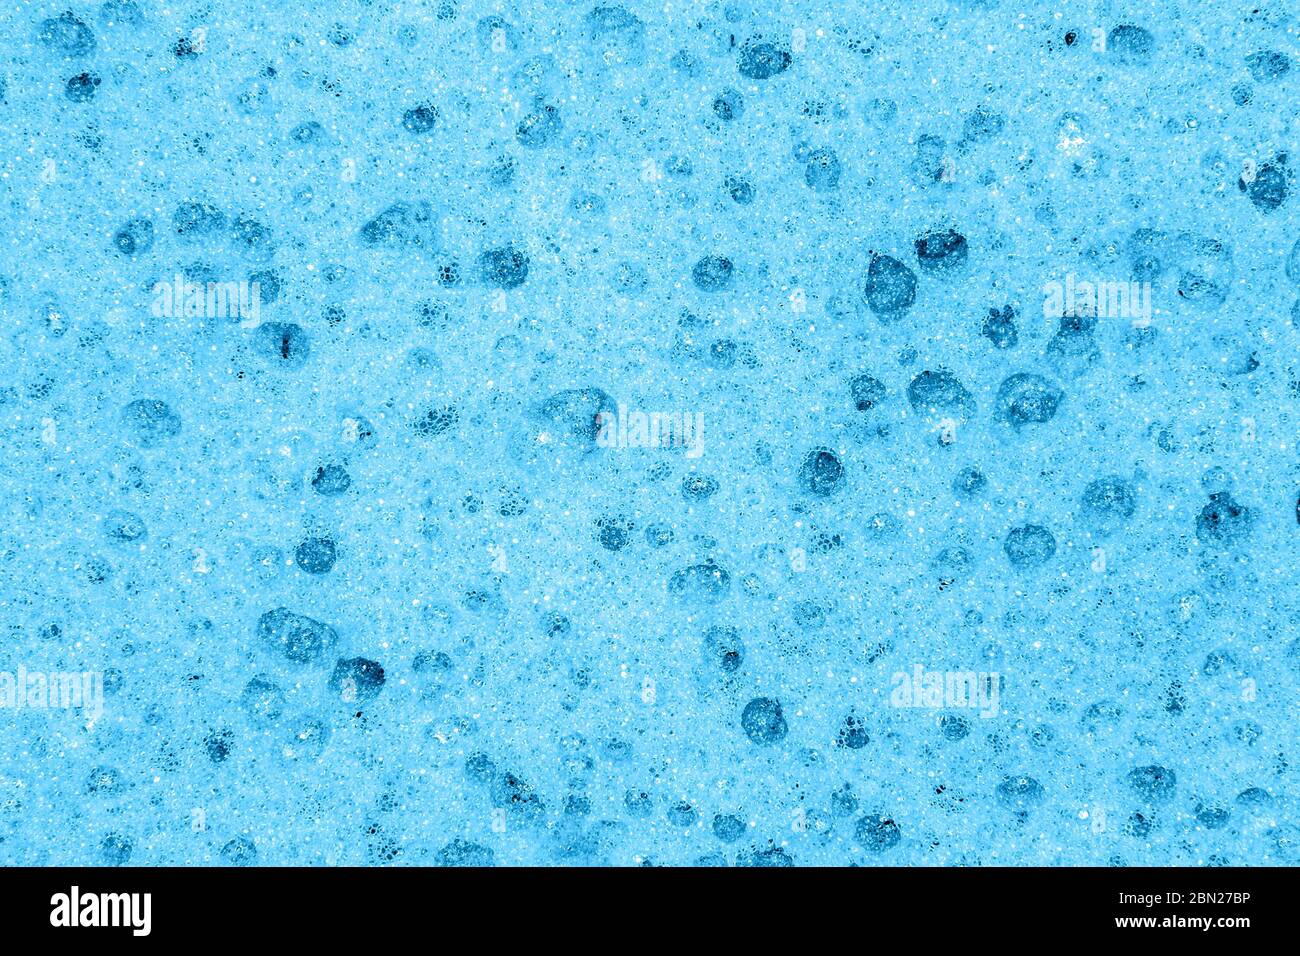 Bild Hintergrund Schnitt Textur Schaum Gummi blau Stockfoto